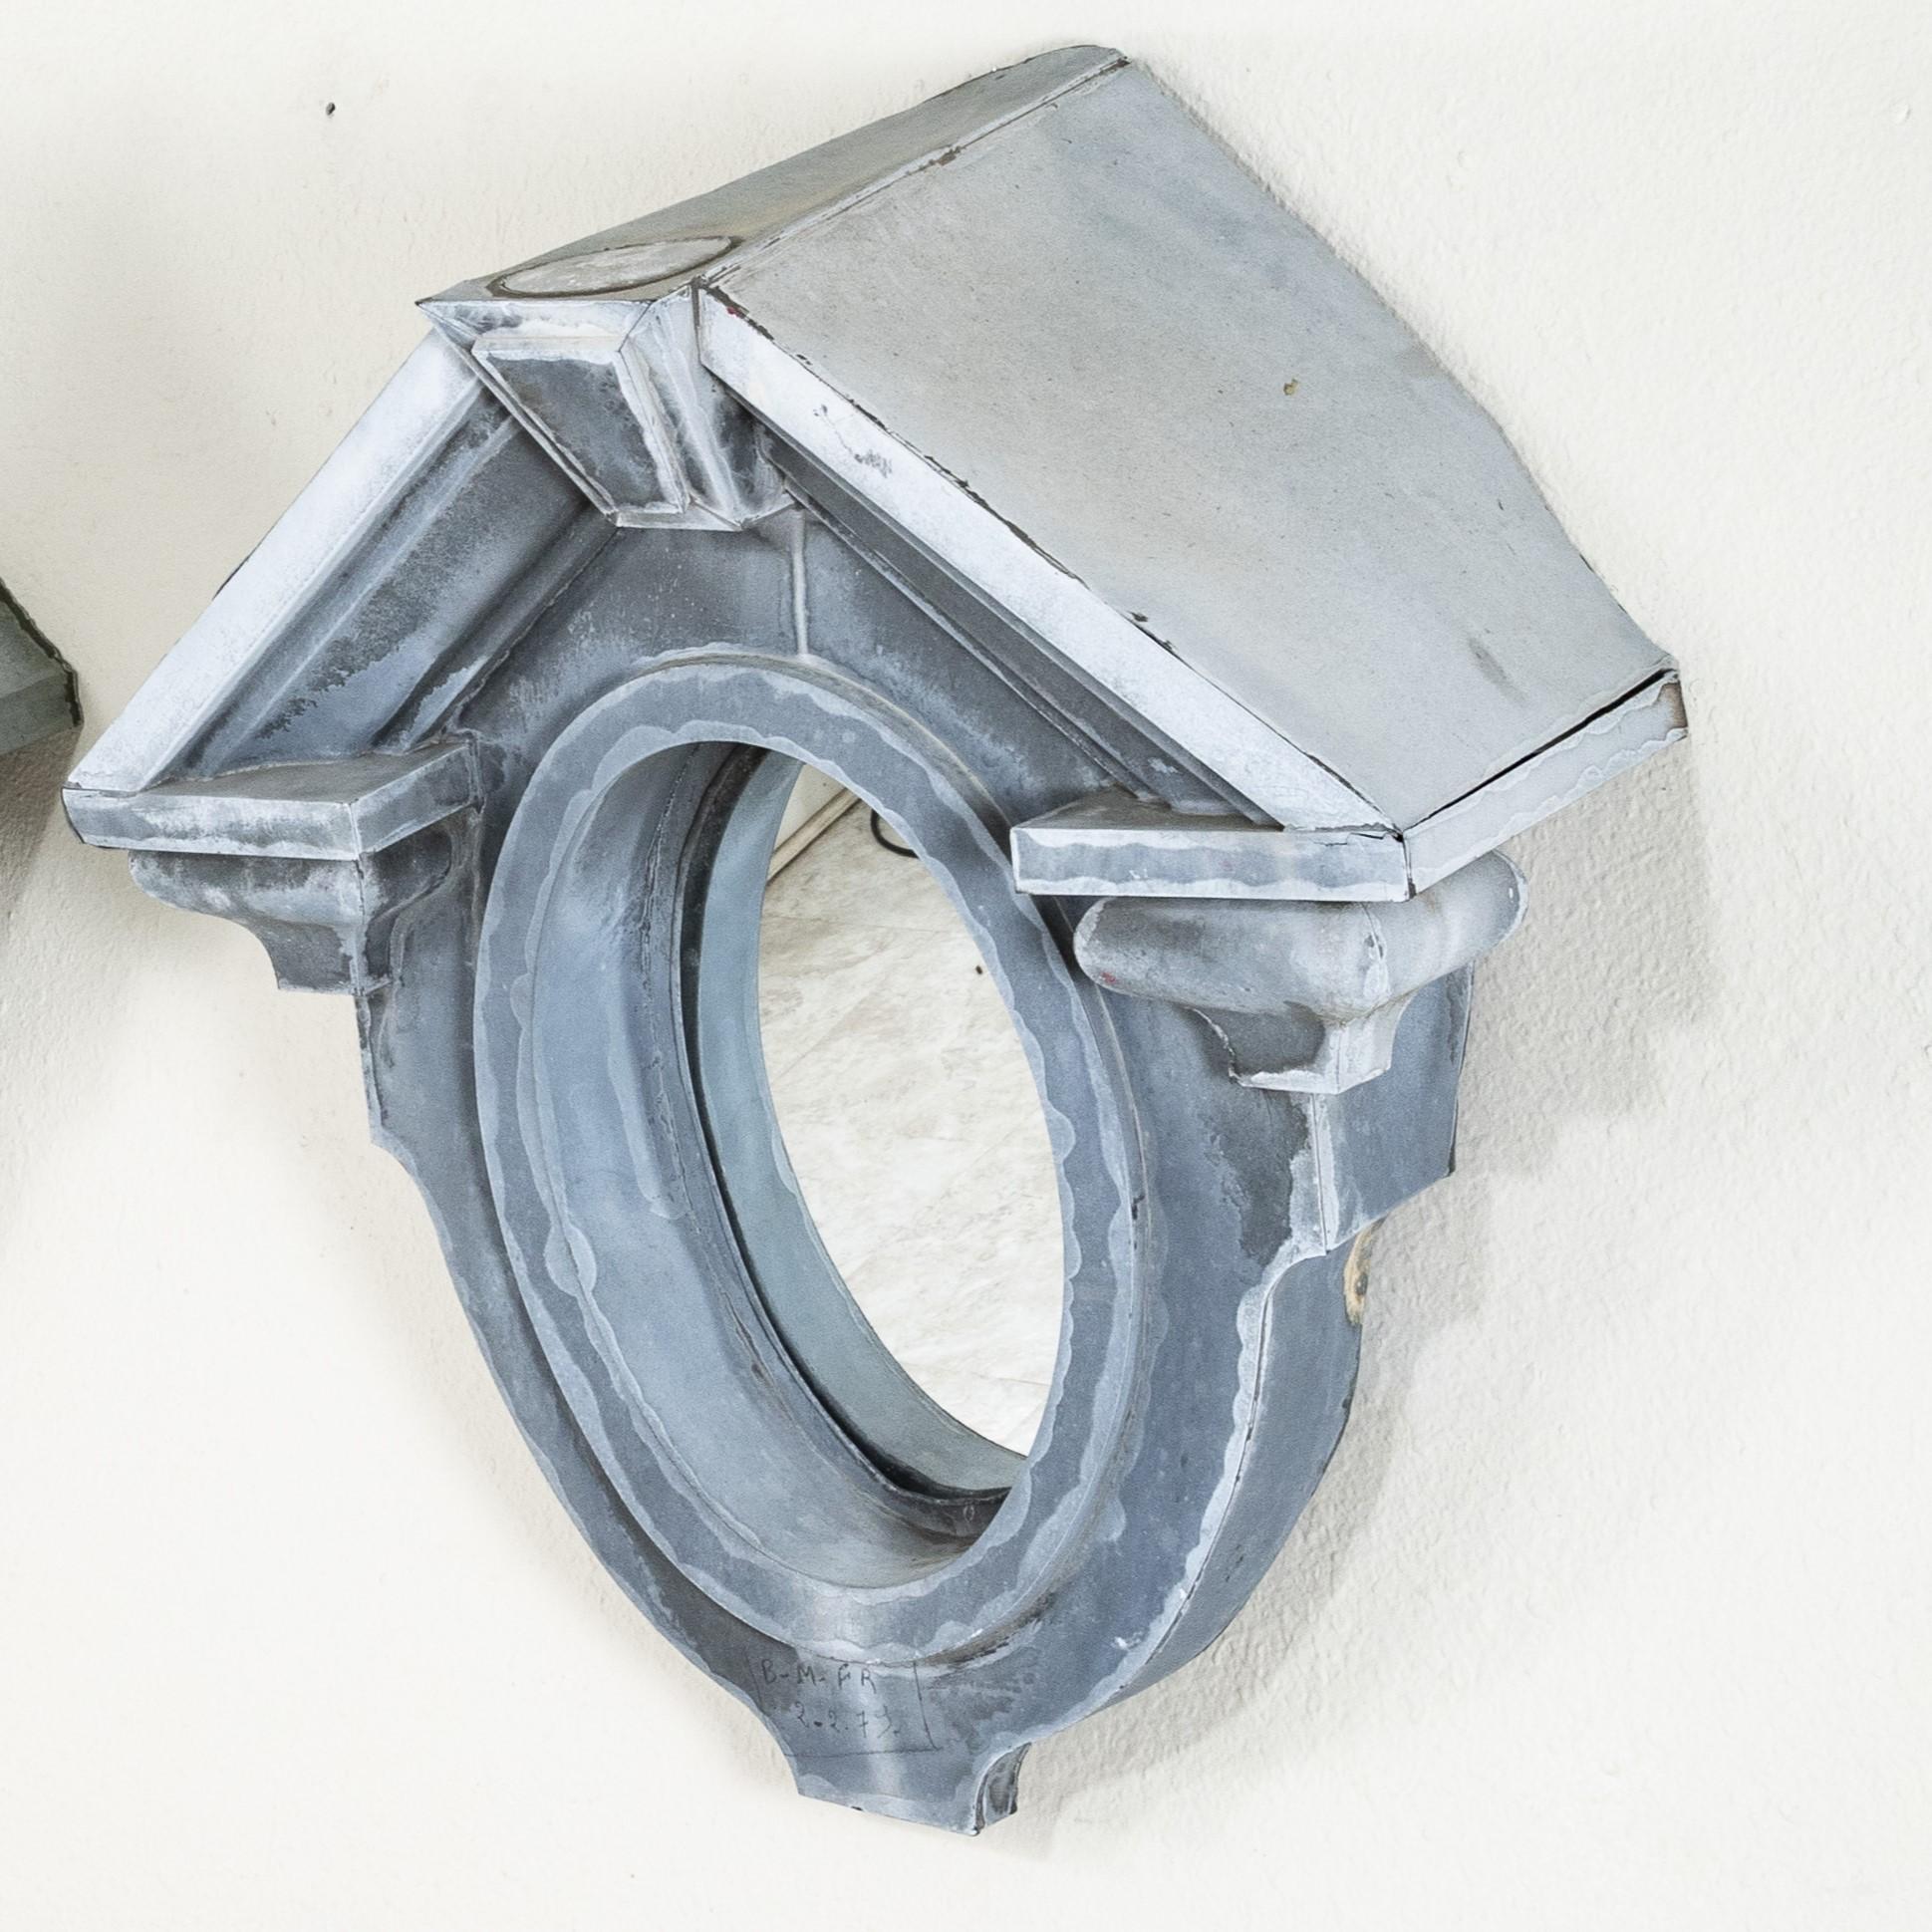 Cet œil de bœuf en zinc du XIXe siècle était à l'origine une lucarne dans le toit mansardé d'un manoir normand. D'une hauteur de 34 pouces, avec son toit de style fronton classique et son miroir intérieur, cette pièce constitue un élément